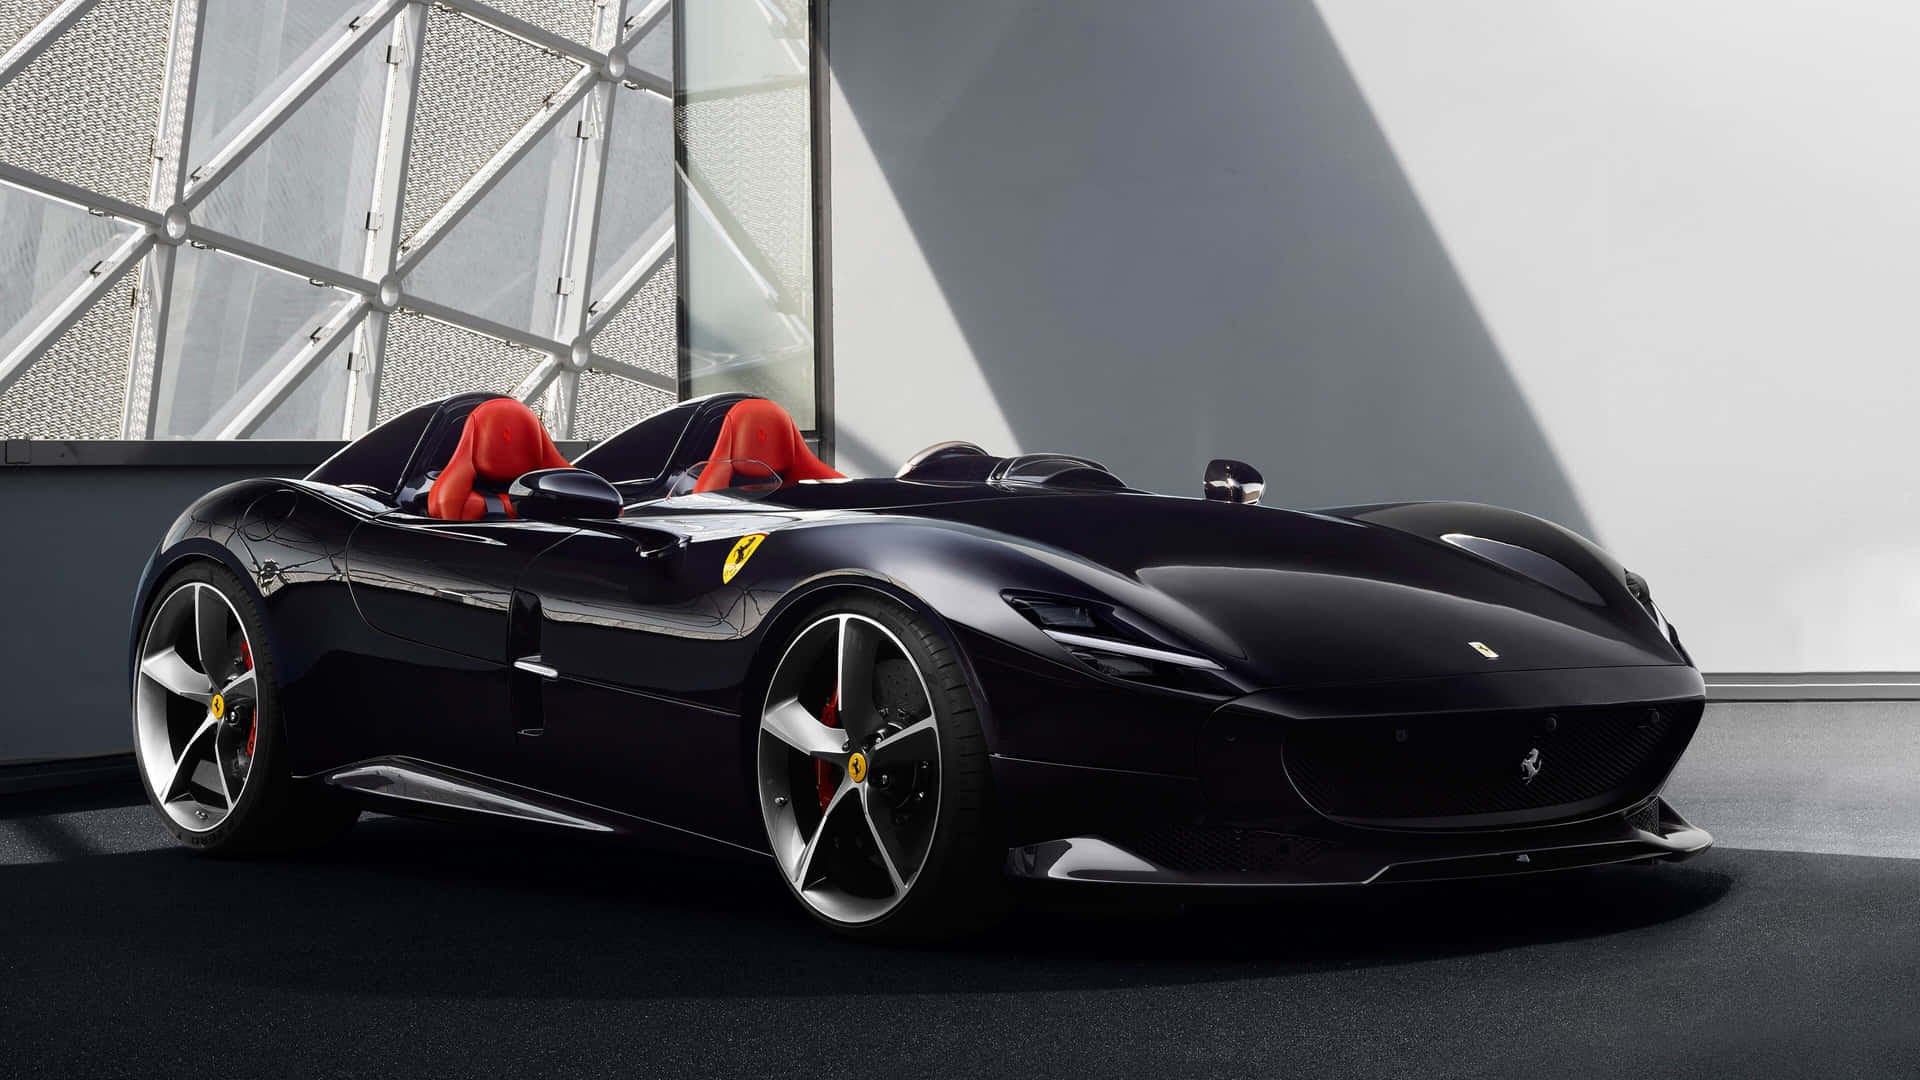 Ferrari F12tdf Concept Car